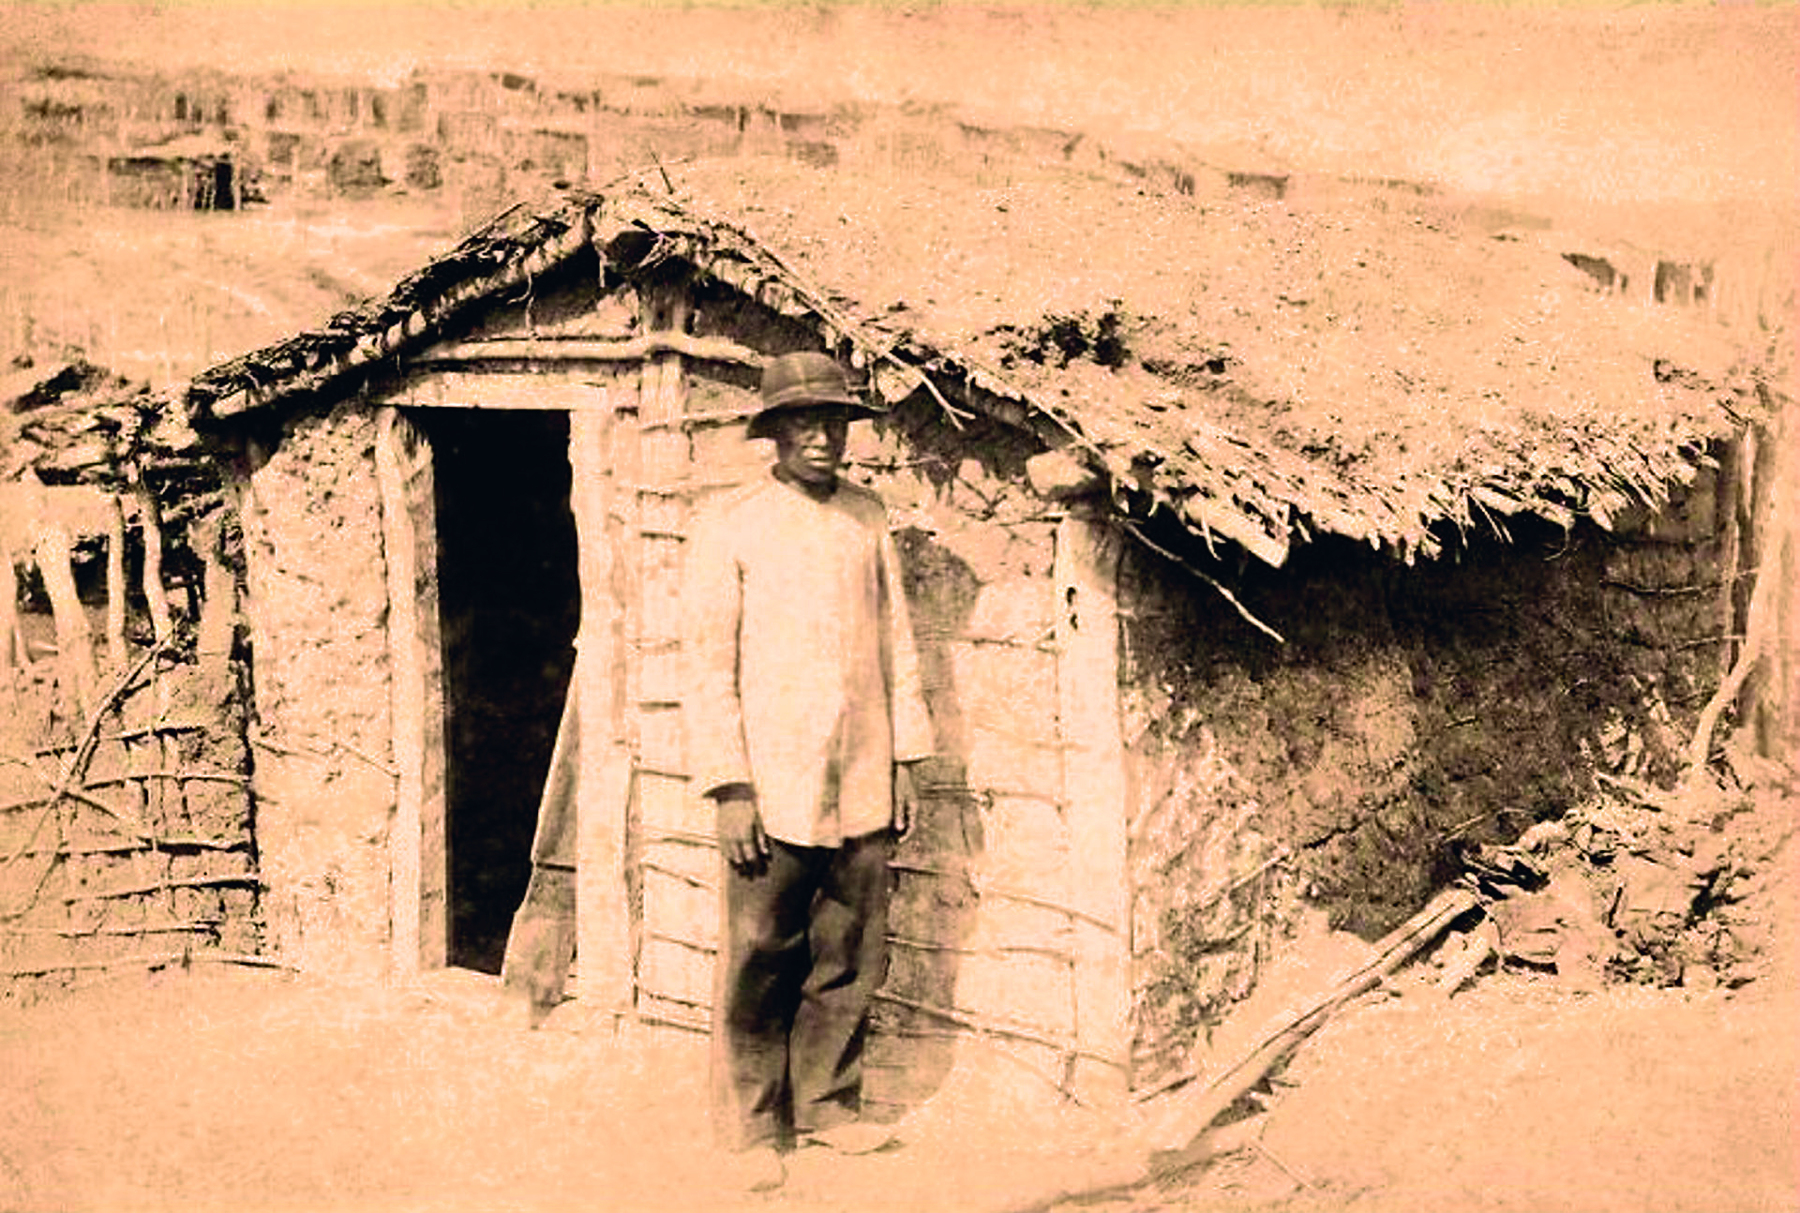 Fotografia em sépia. Homem em pé, vestindo calça e camisa de manga longa. Usa um chapéu arredondado. Está em frente a uma casa rústica com uma pequena porta e telhado de palha.